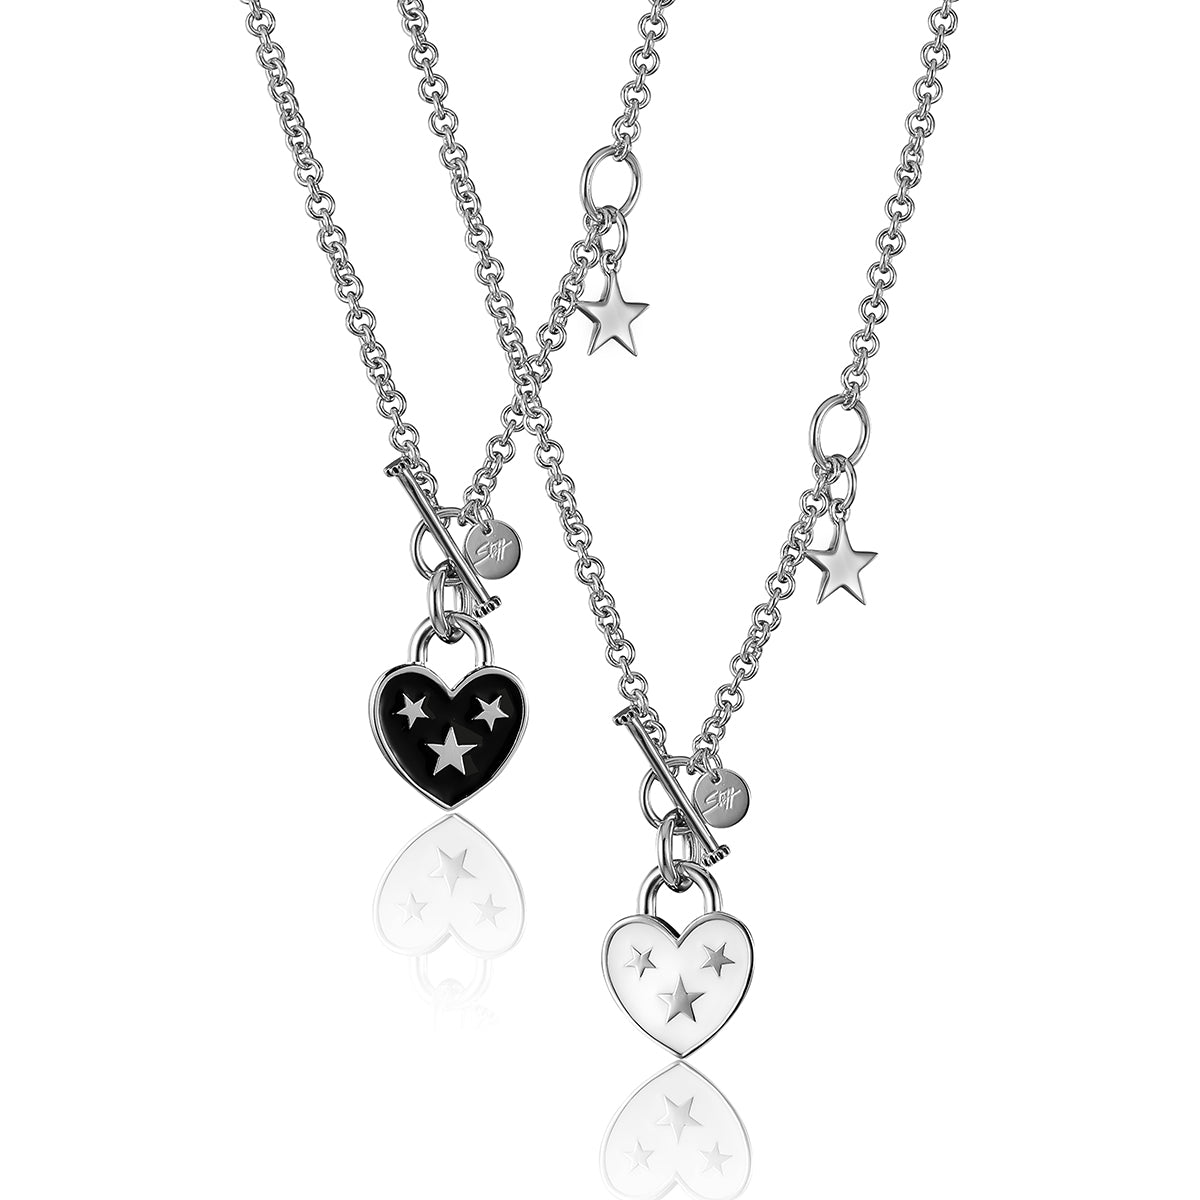 Steff Silver & Black Enamel Lovelock Necklace from Steffans Jewellers.